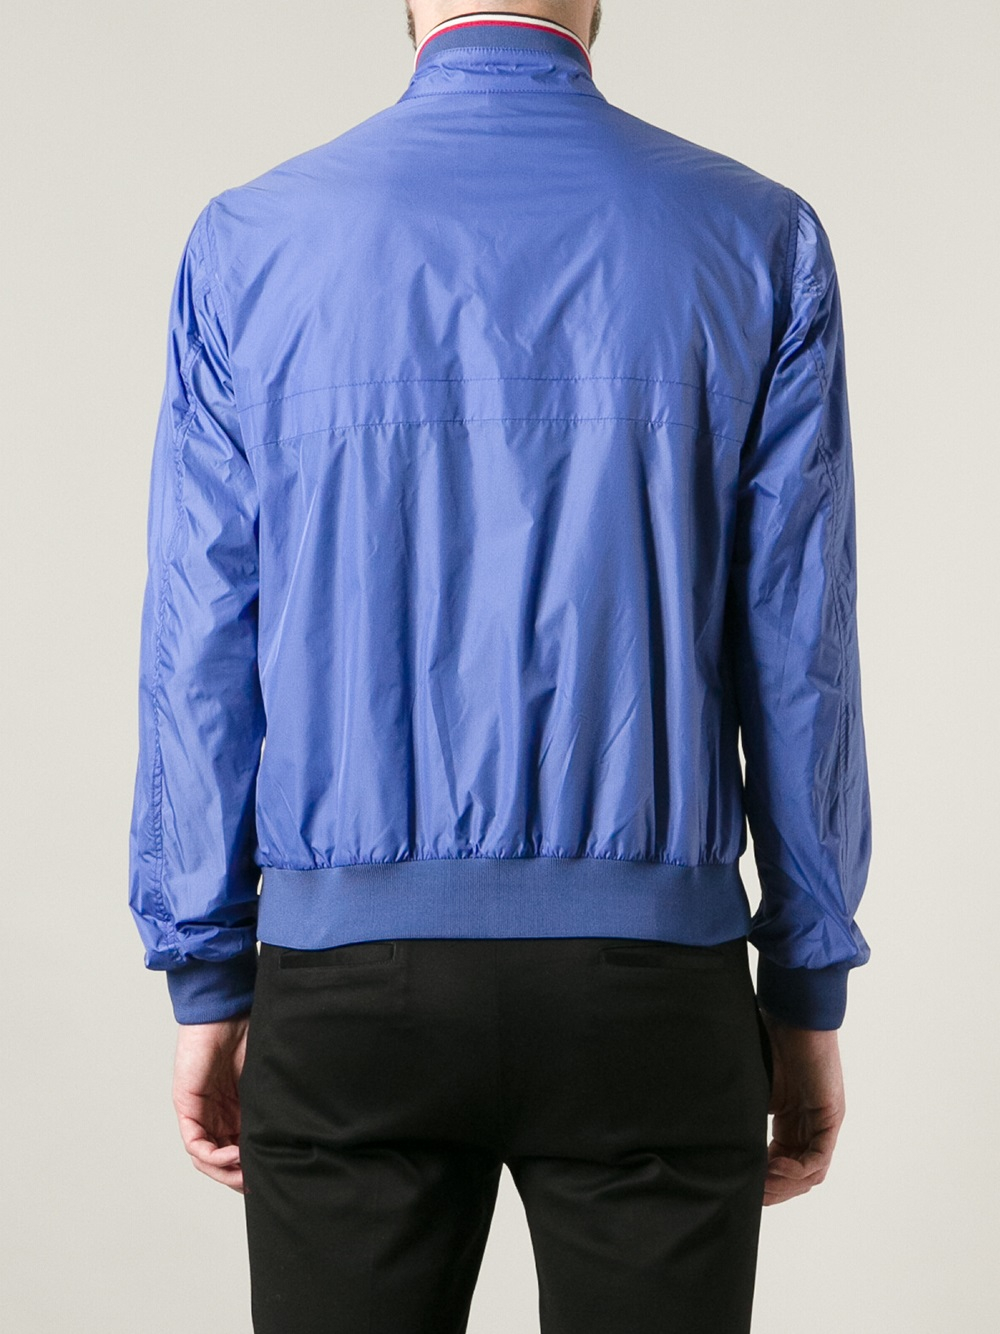 Moncler Windbreaker Jacket in Blue for Men - Lyst